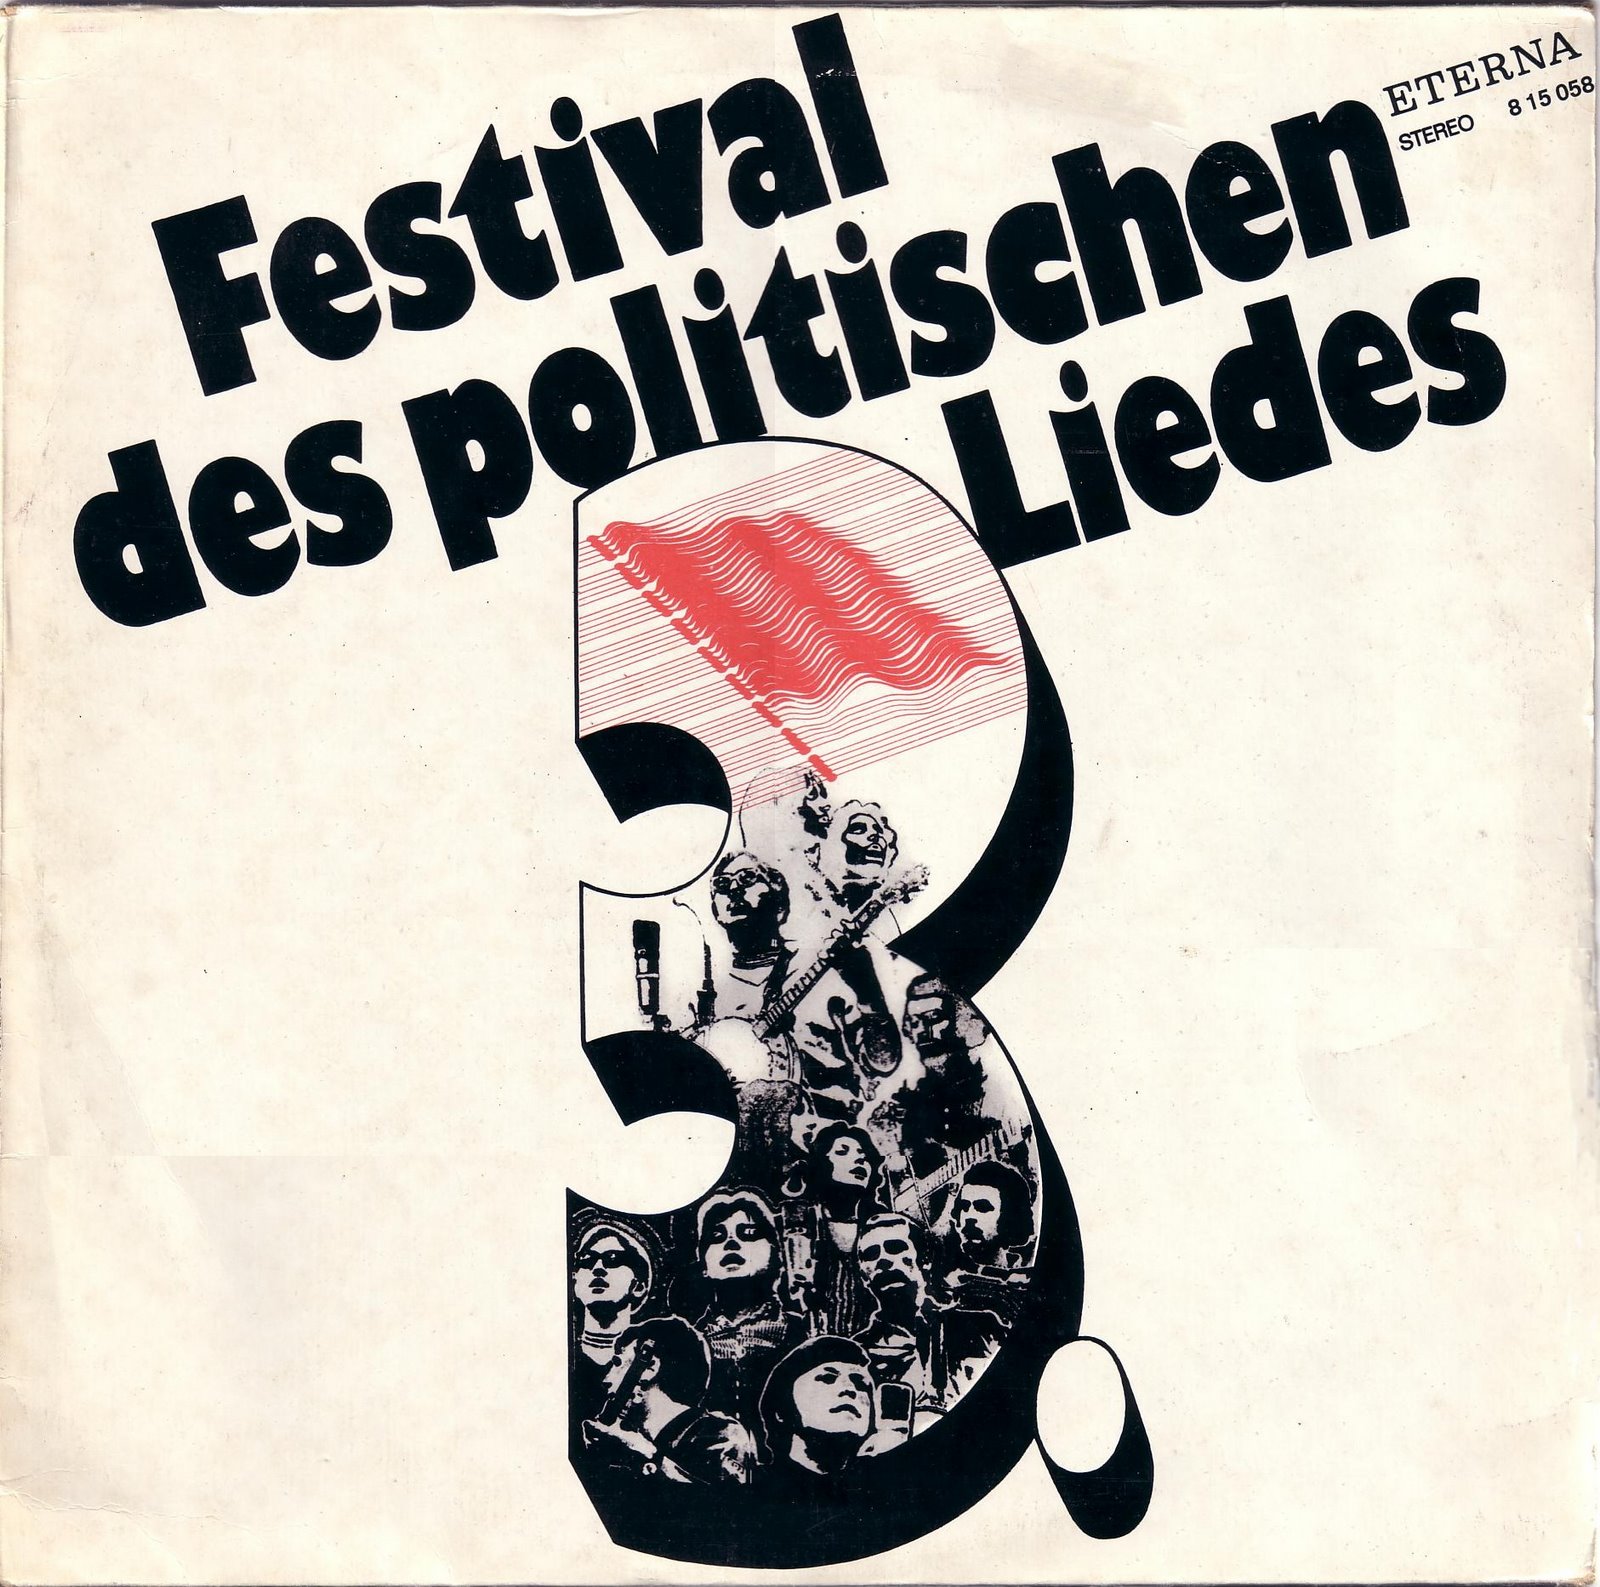 [1972+-+3.+Festival+des+politischen+Liedes+-+frontal.jpg]